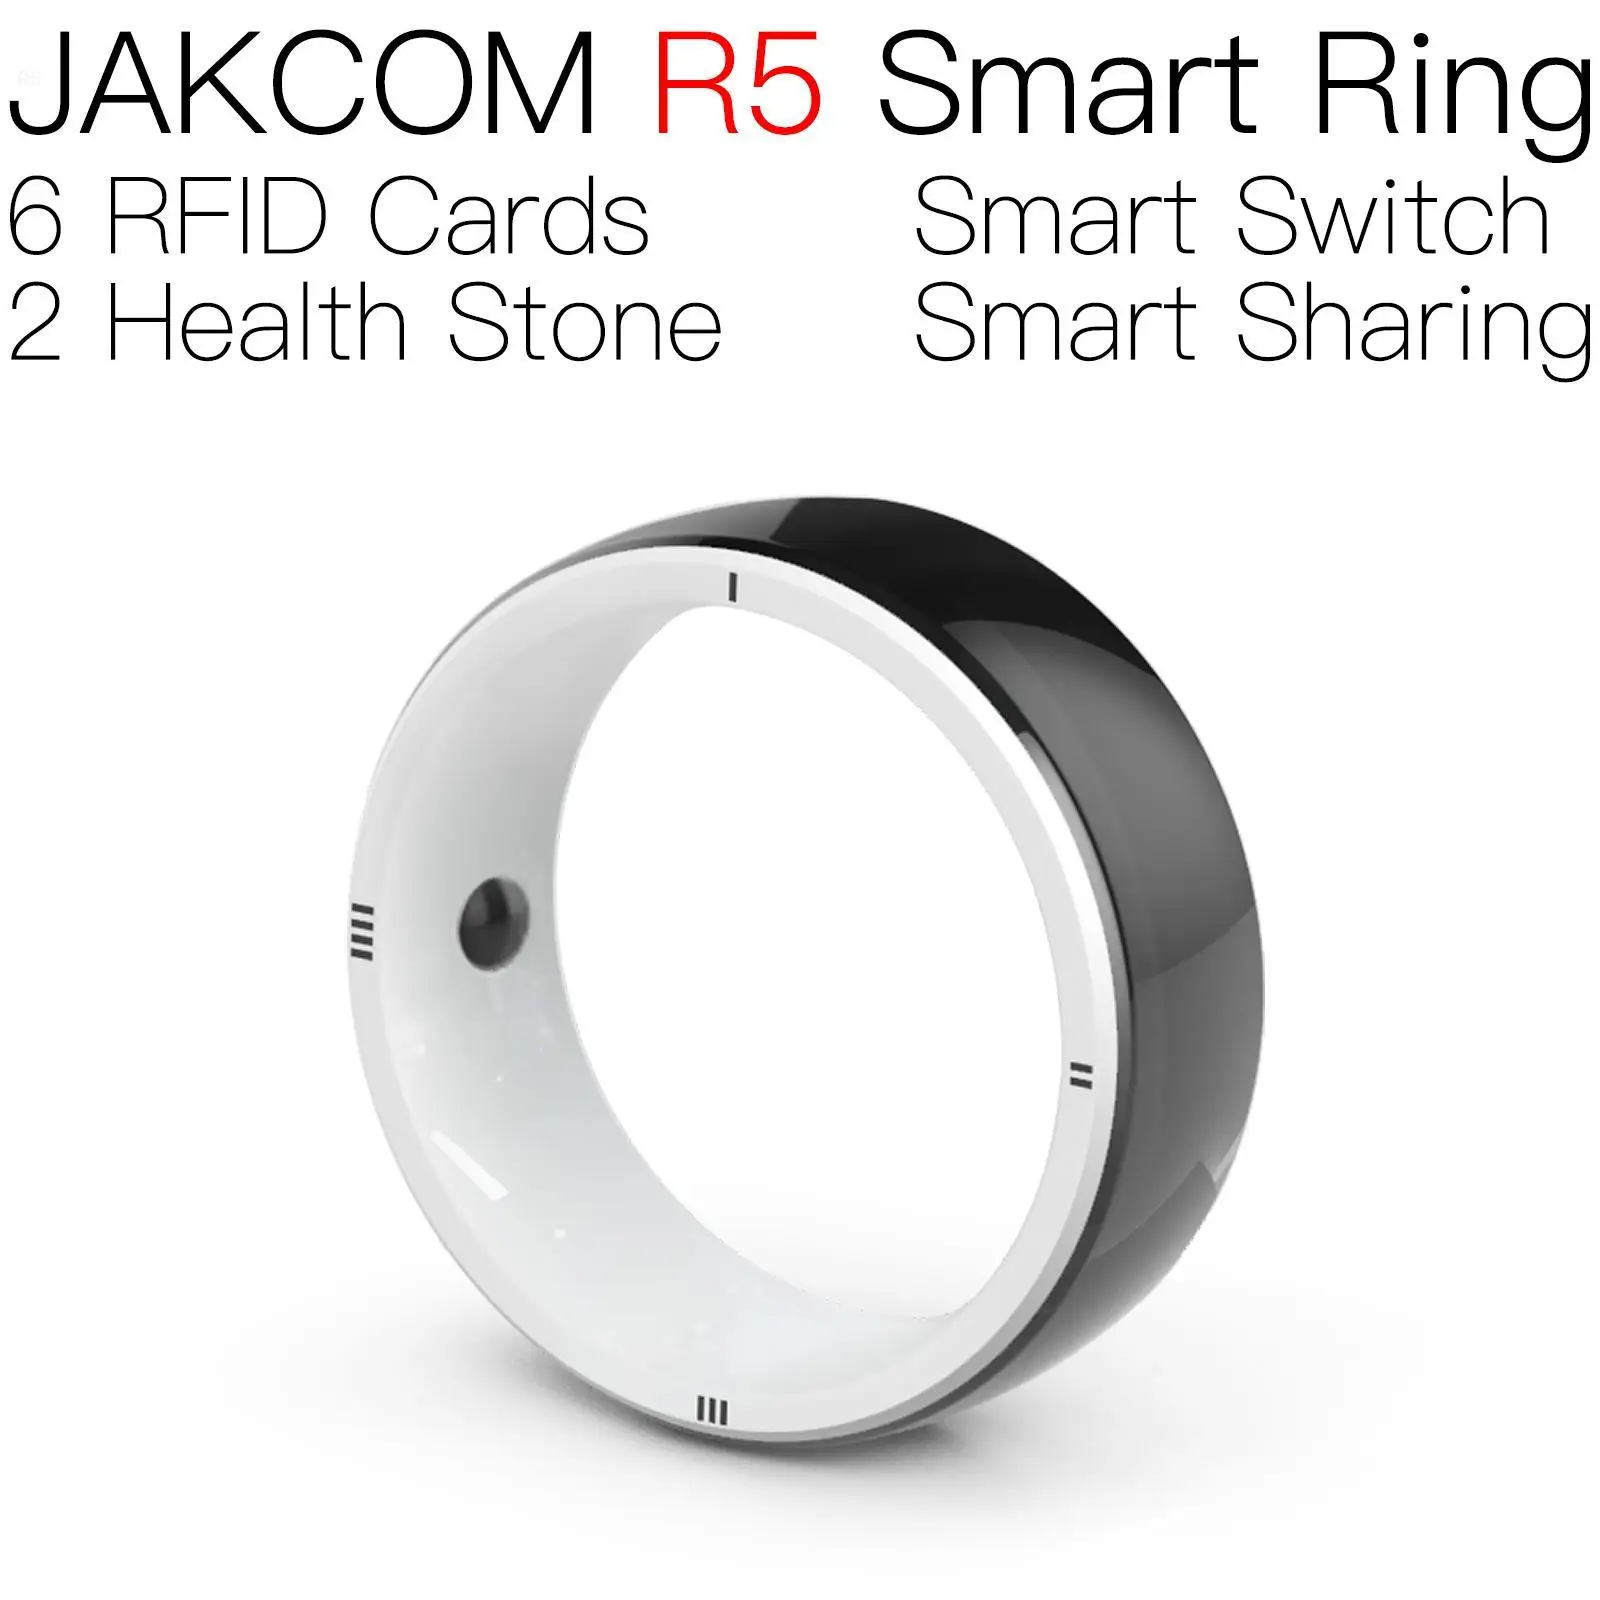 

Умное кольцо JAKCOM R5, красивое, чем чипы, пассивный rfid чип, брелок, бирка, код lxtream, Франция, подписка, отслеживание, сублимация